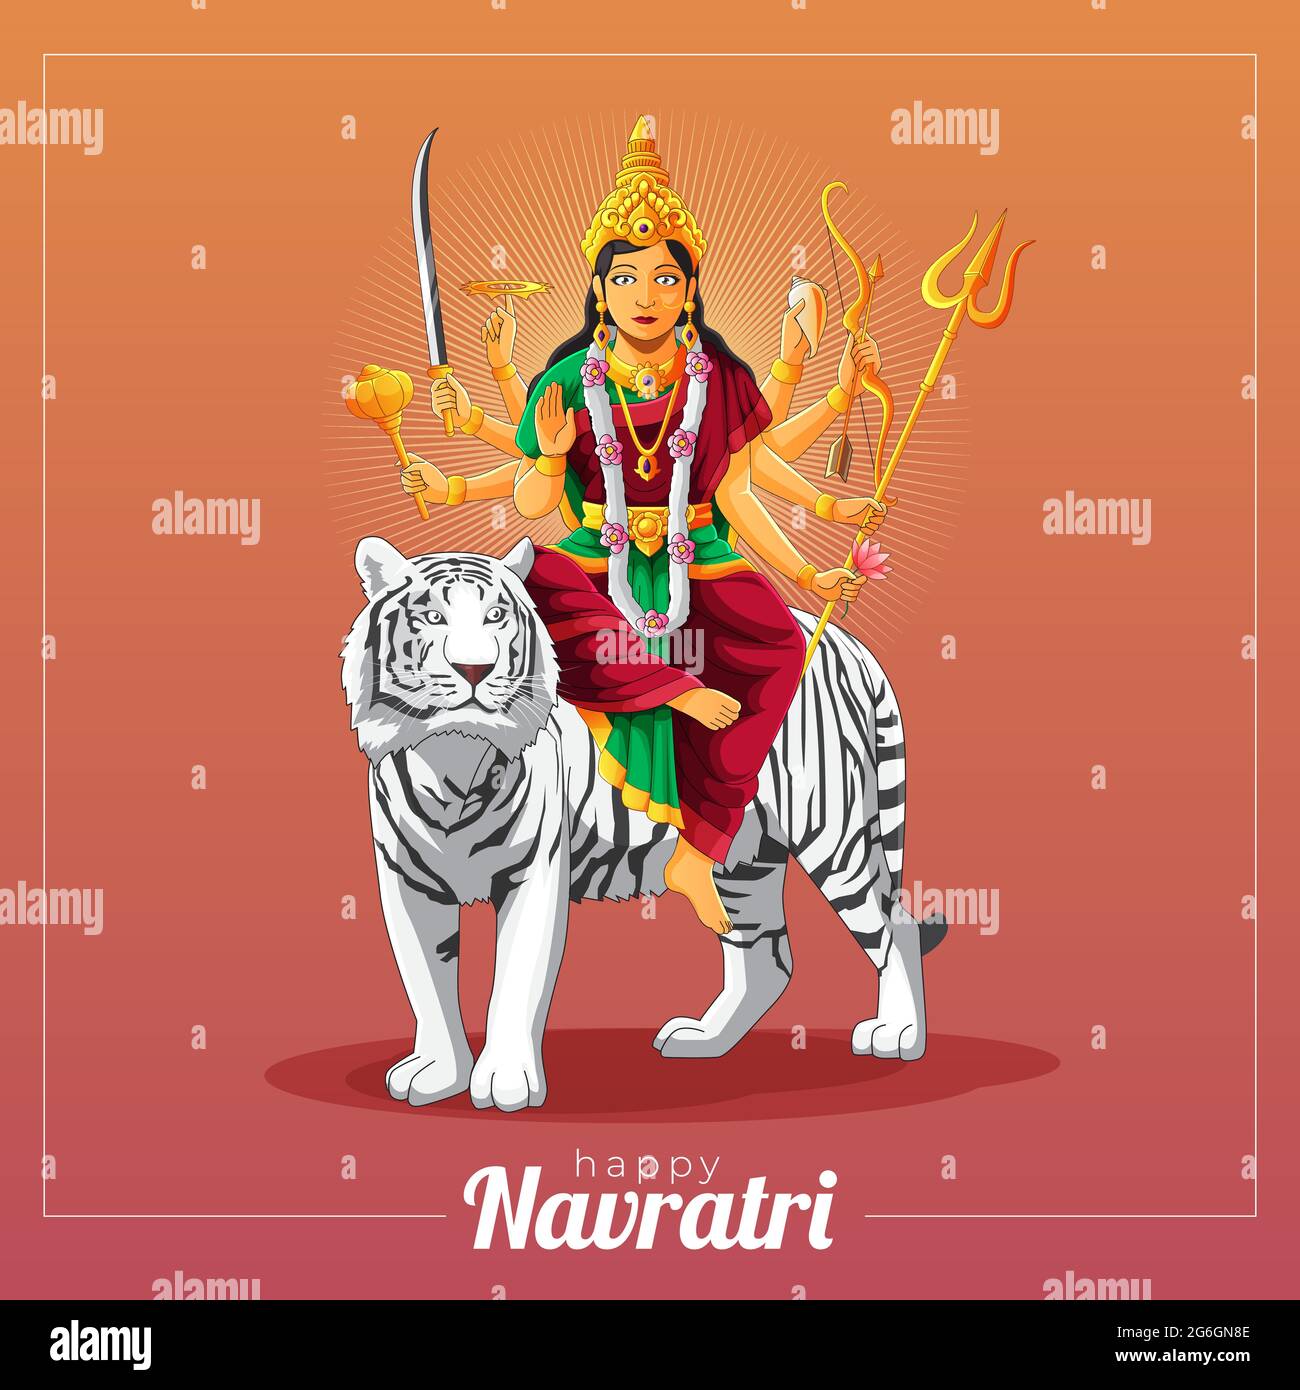 sharad navratri vector greeting card with Durga goddess and white tiger Stock Vector